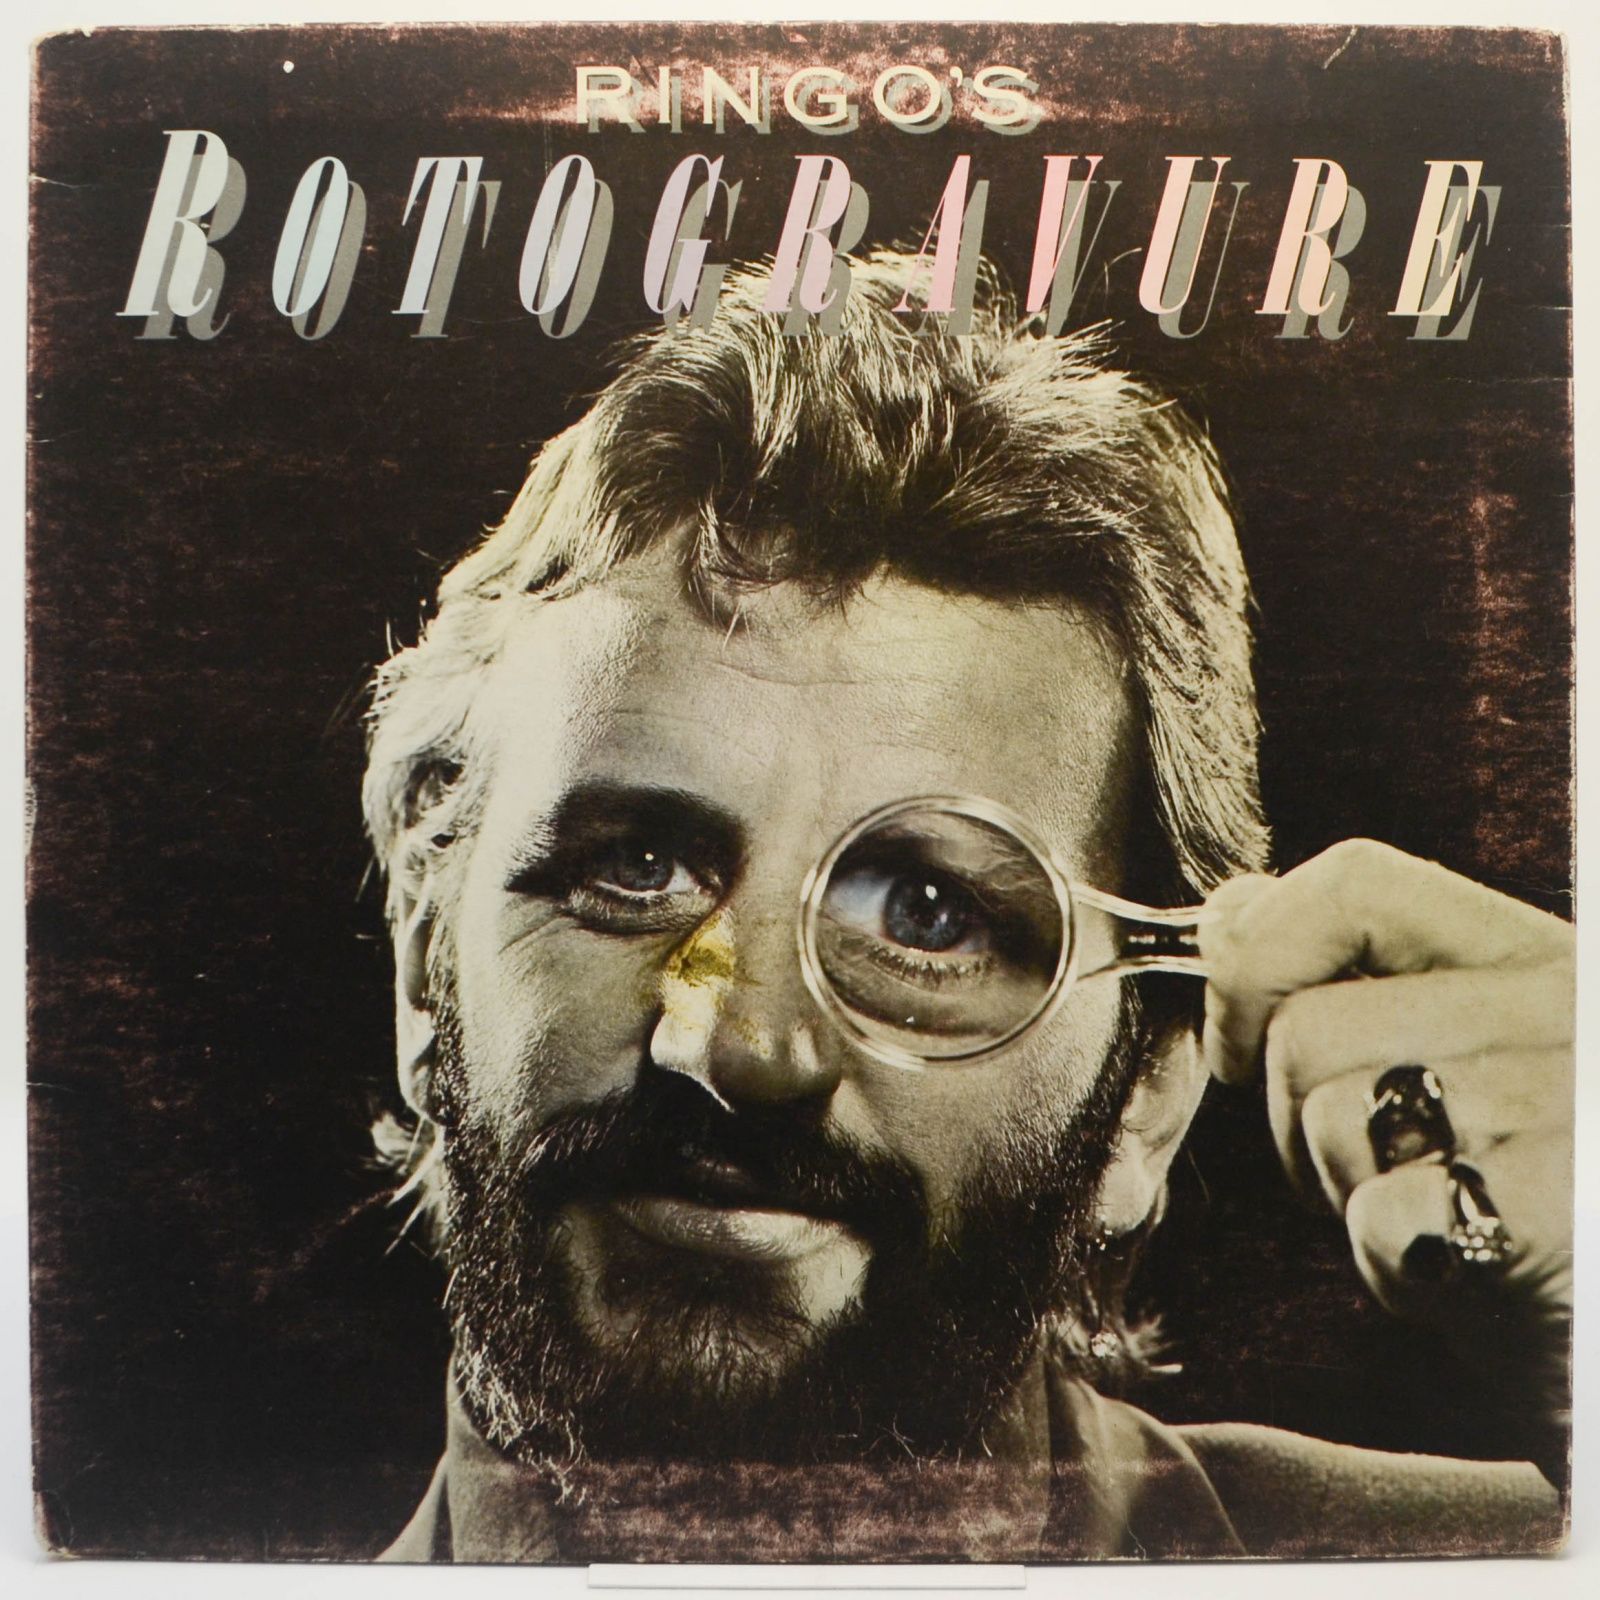 Ringo's Rotogravure, 1976